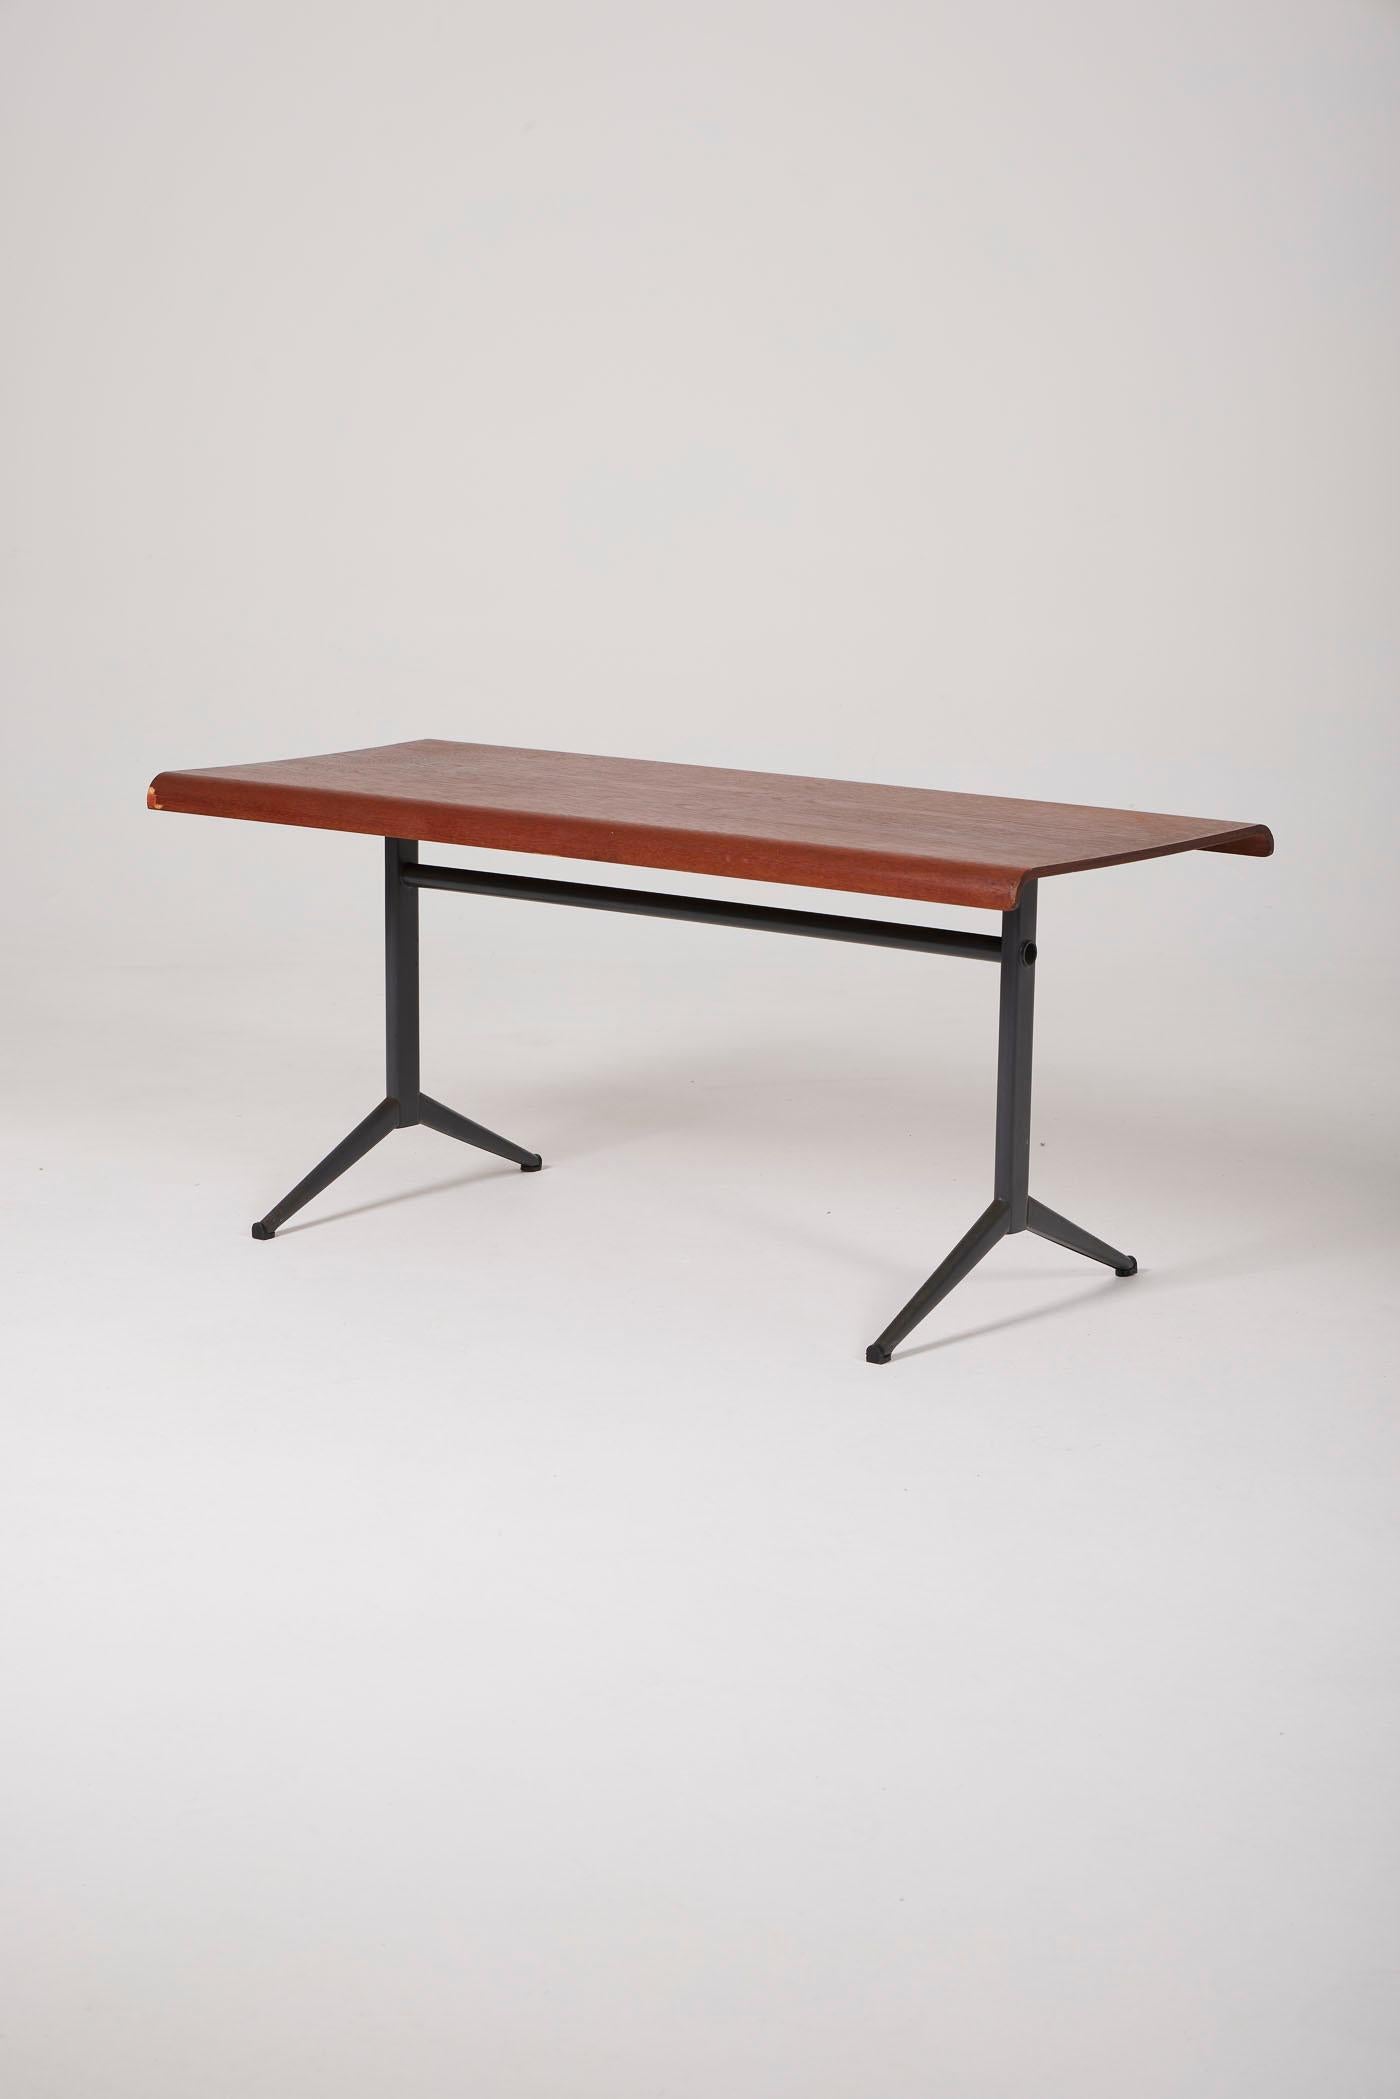 Table basse du designer néerlandais Friso Kramer pour Auping, datant des années 1960. Il se compose d'un plateau en contreplaqué de teck et d'une base en métal laqué noir. Un manque de placage est à noter sur deux coins, visible sur les photos.
DV426